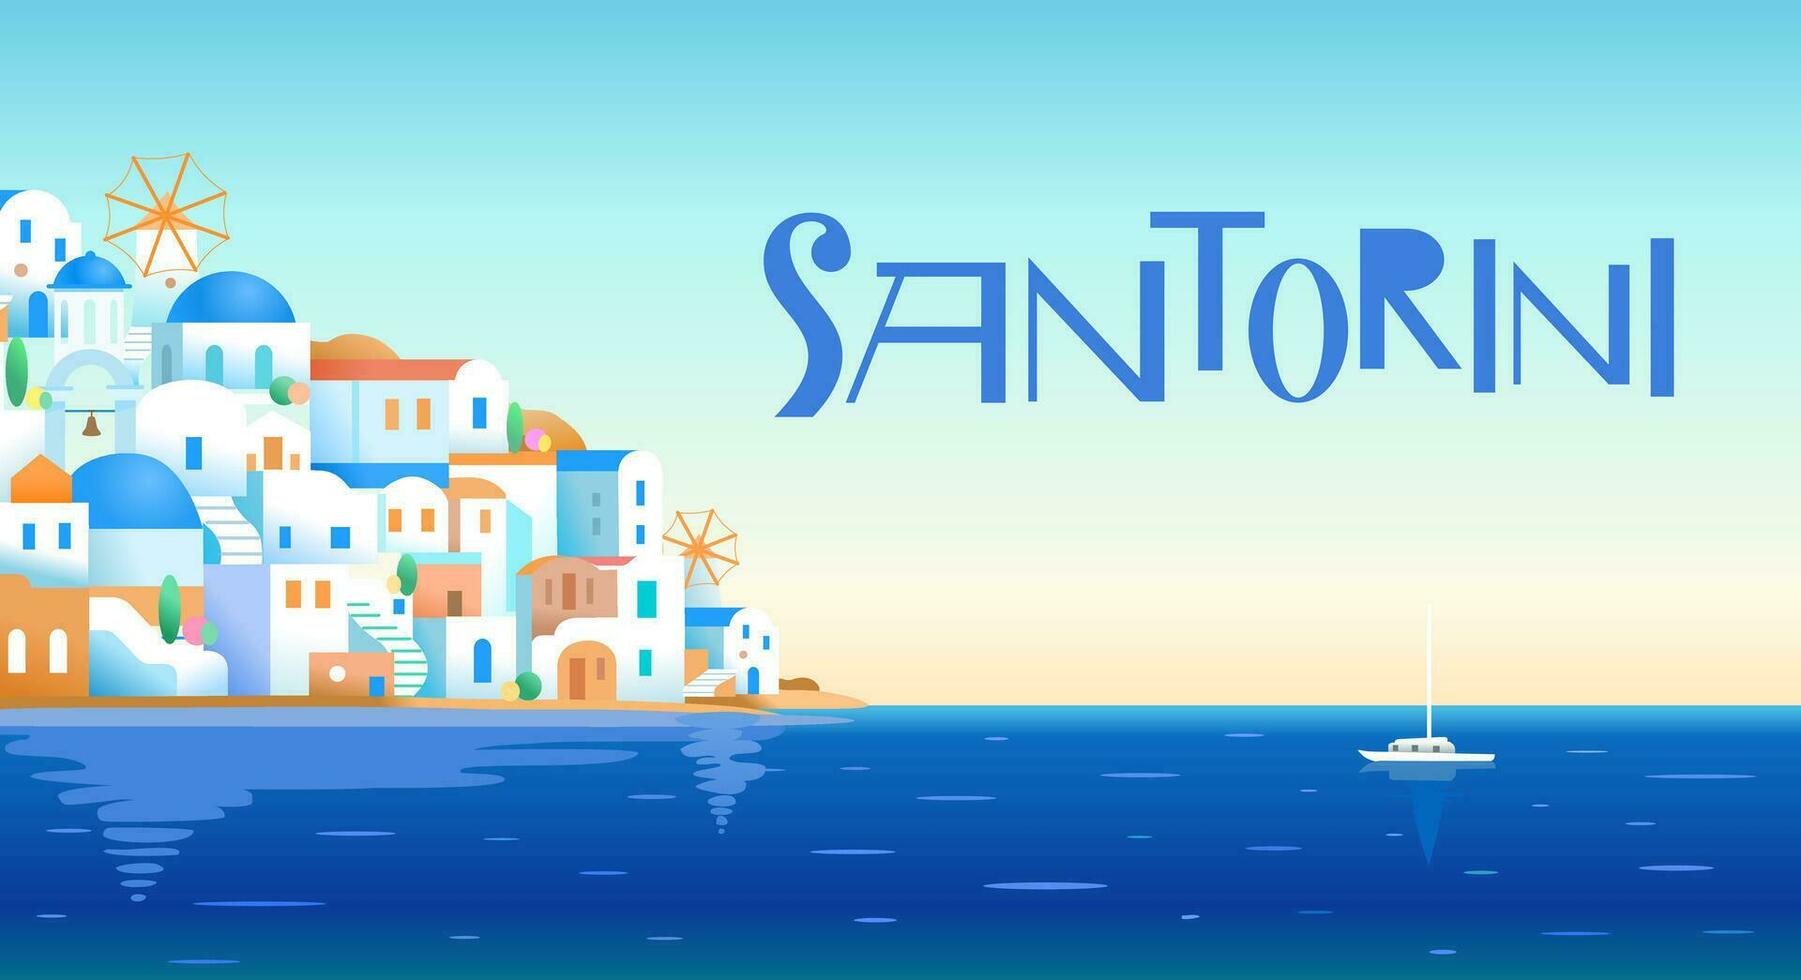 Santorini eiland, Griekenland. mooi traditioneel wit architectuur en blauw koepelvormig Grieks orthodox kerken over- de caldera. toneel- reizen achtergrond. vector illustraties in breed formaat.